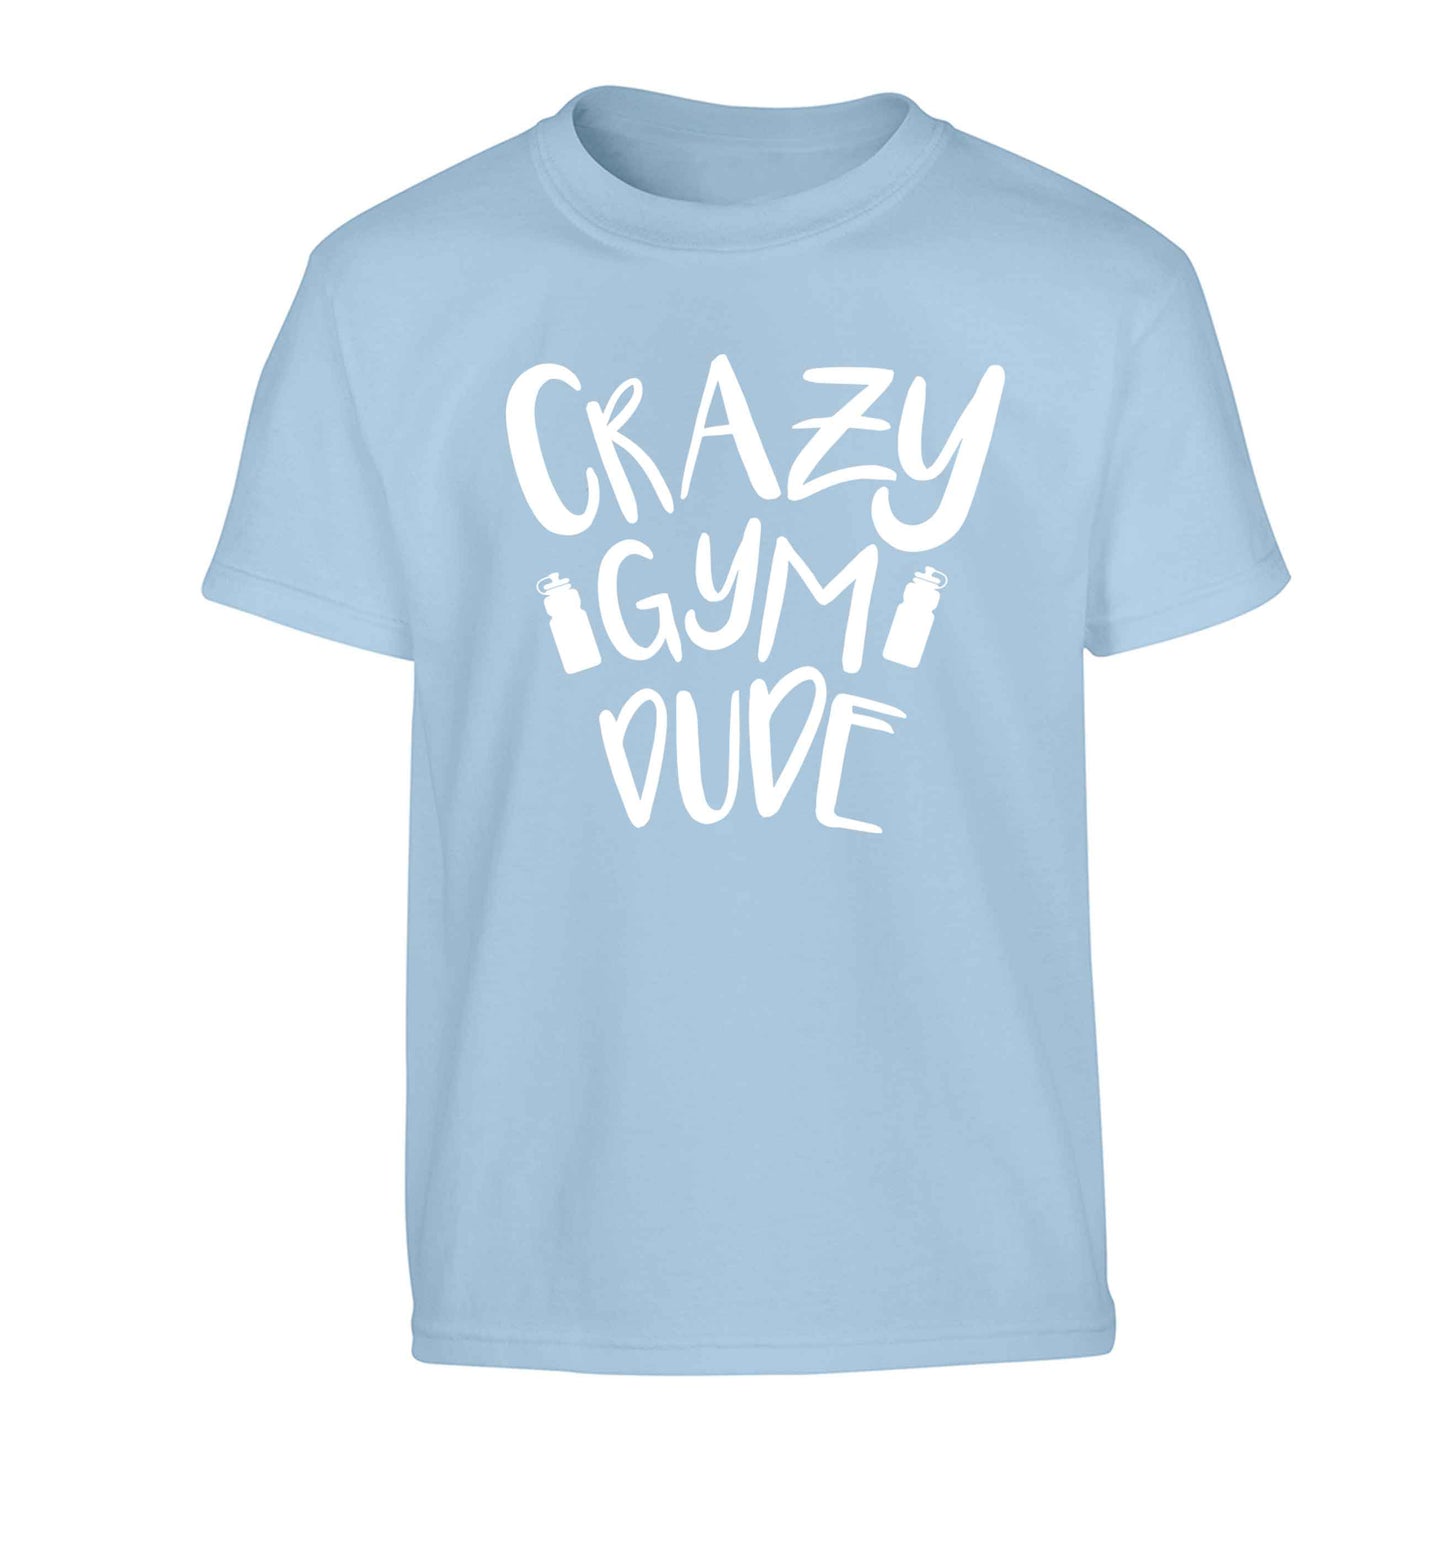 Crazy gym dude Children's light blue Tshirt 12-13 Years